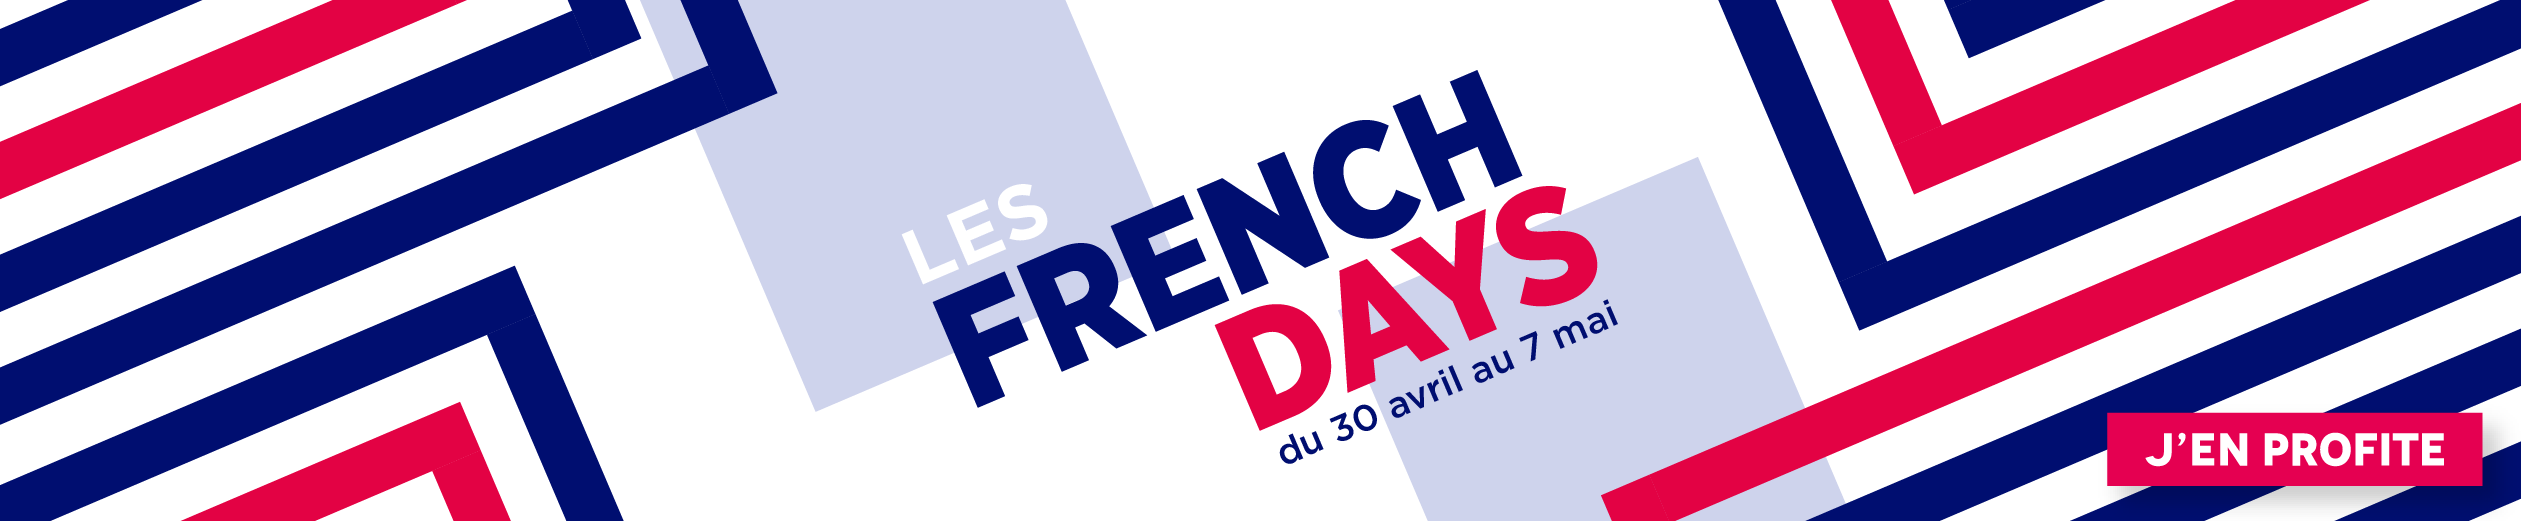 Opération French Days